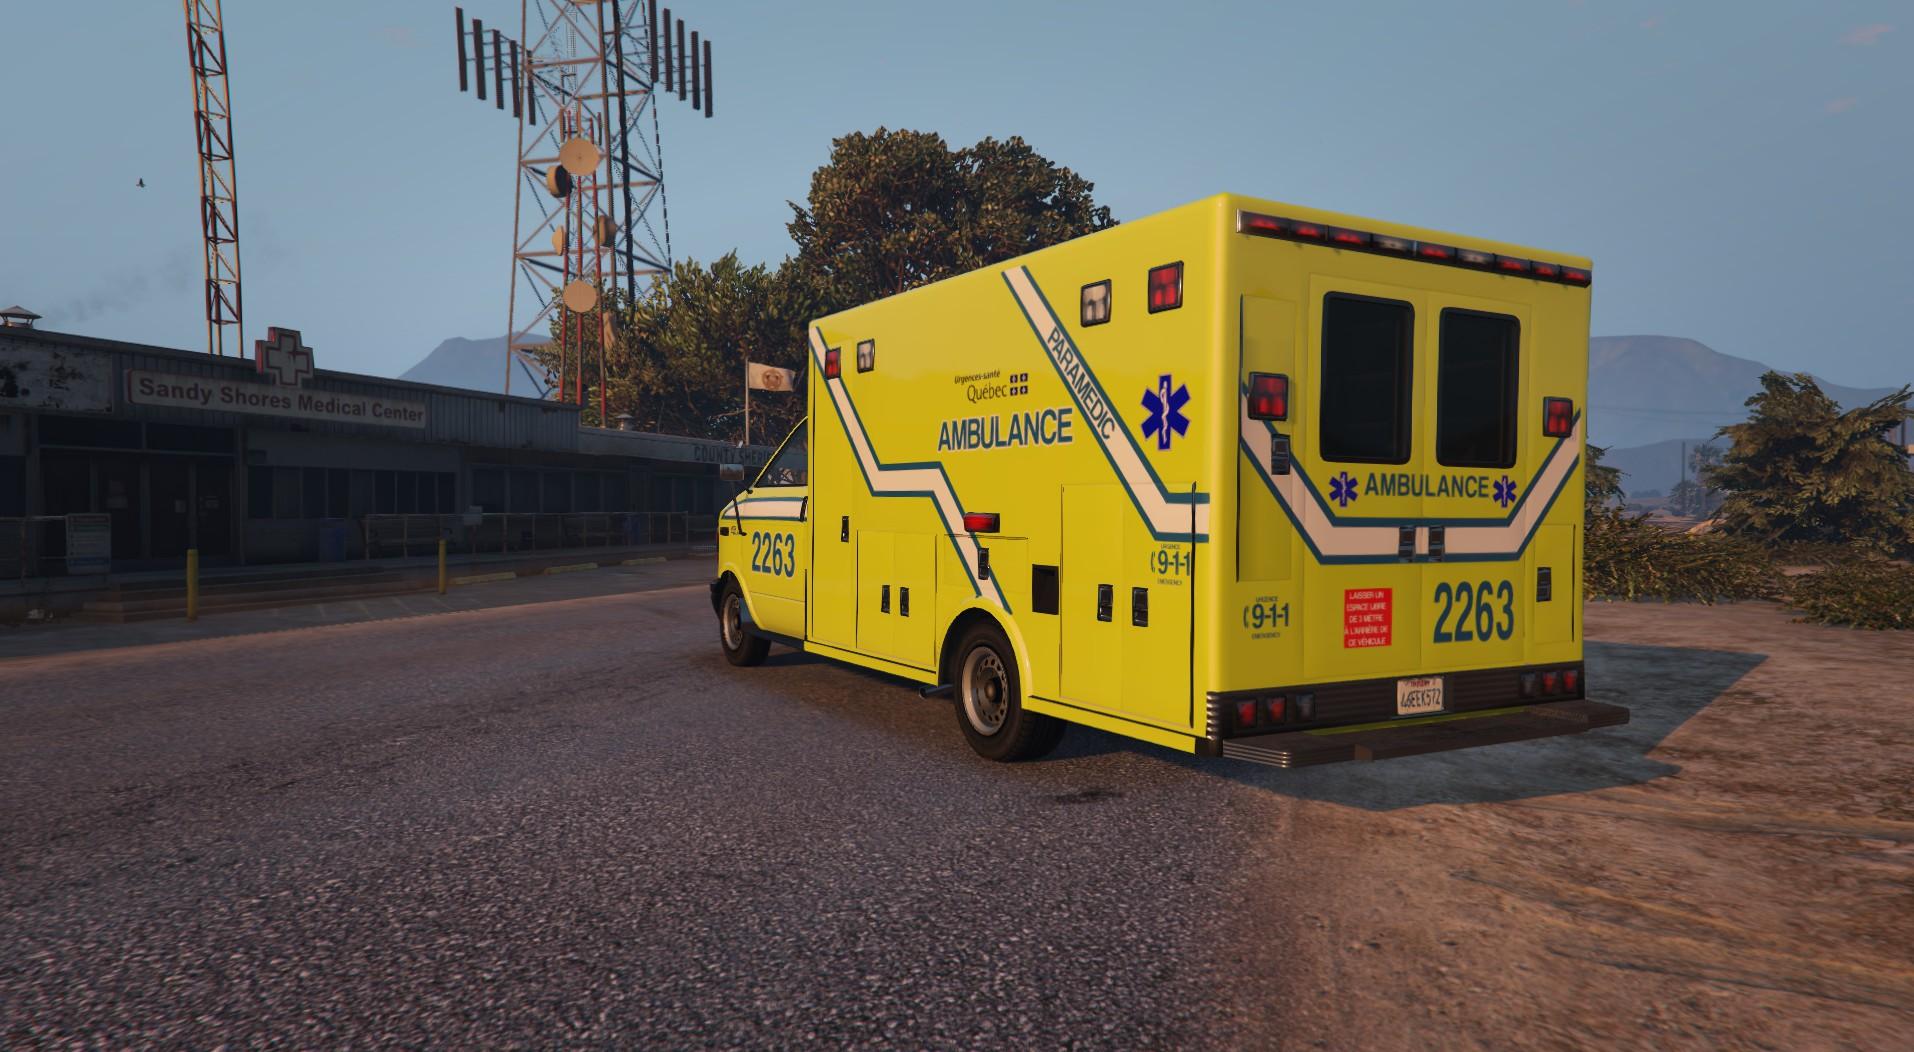 Gta 5 ambulance els фото 81